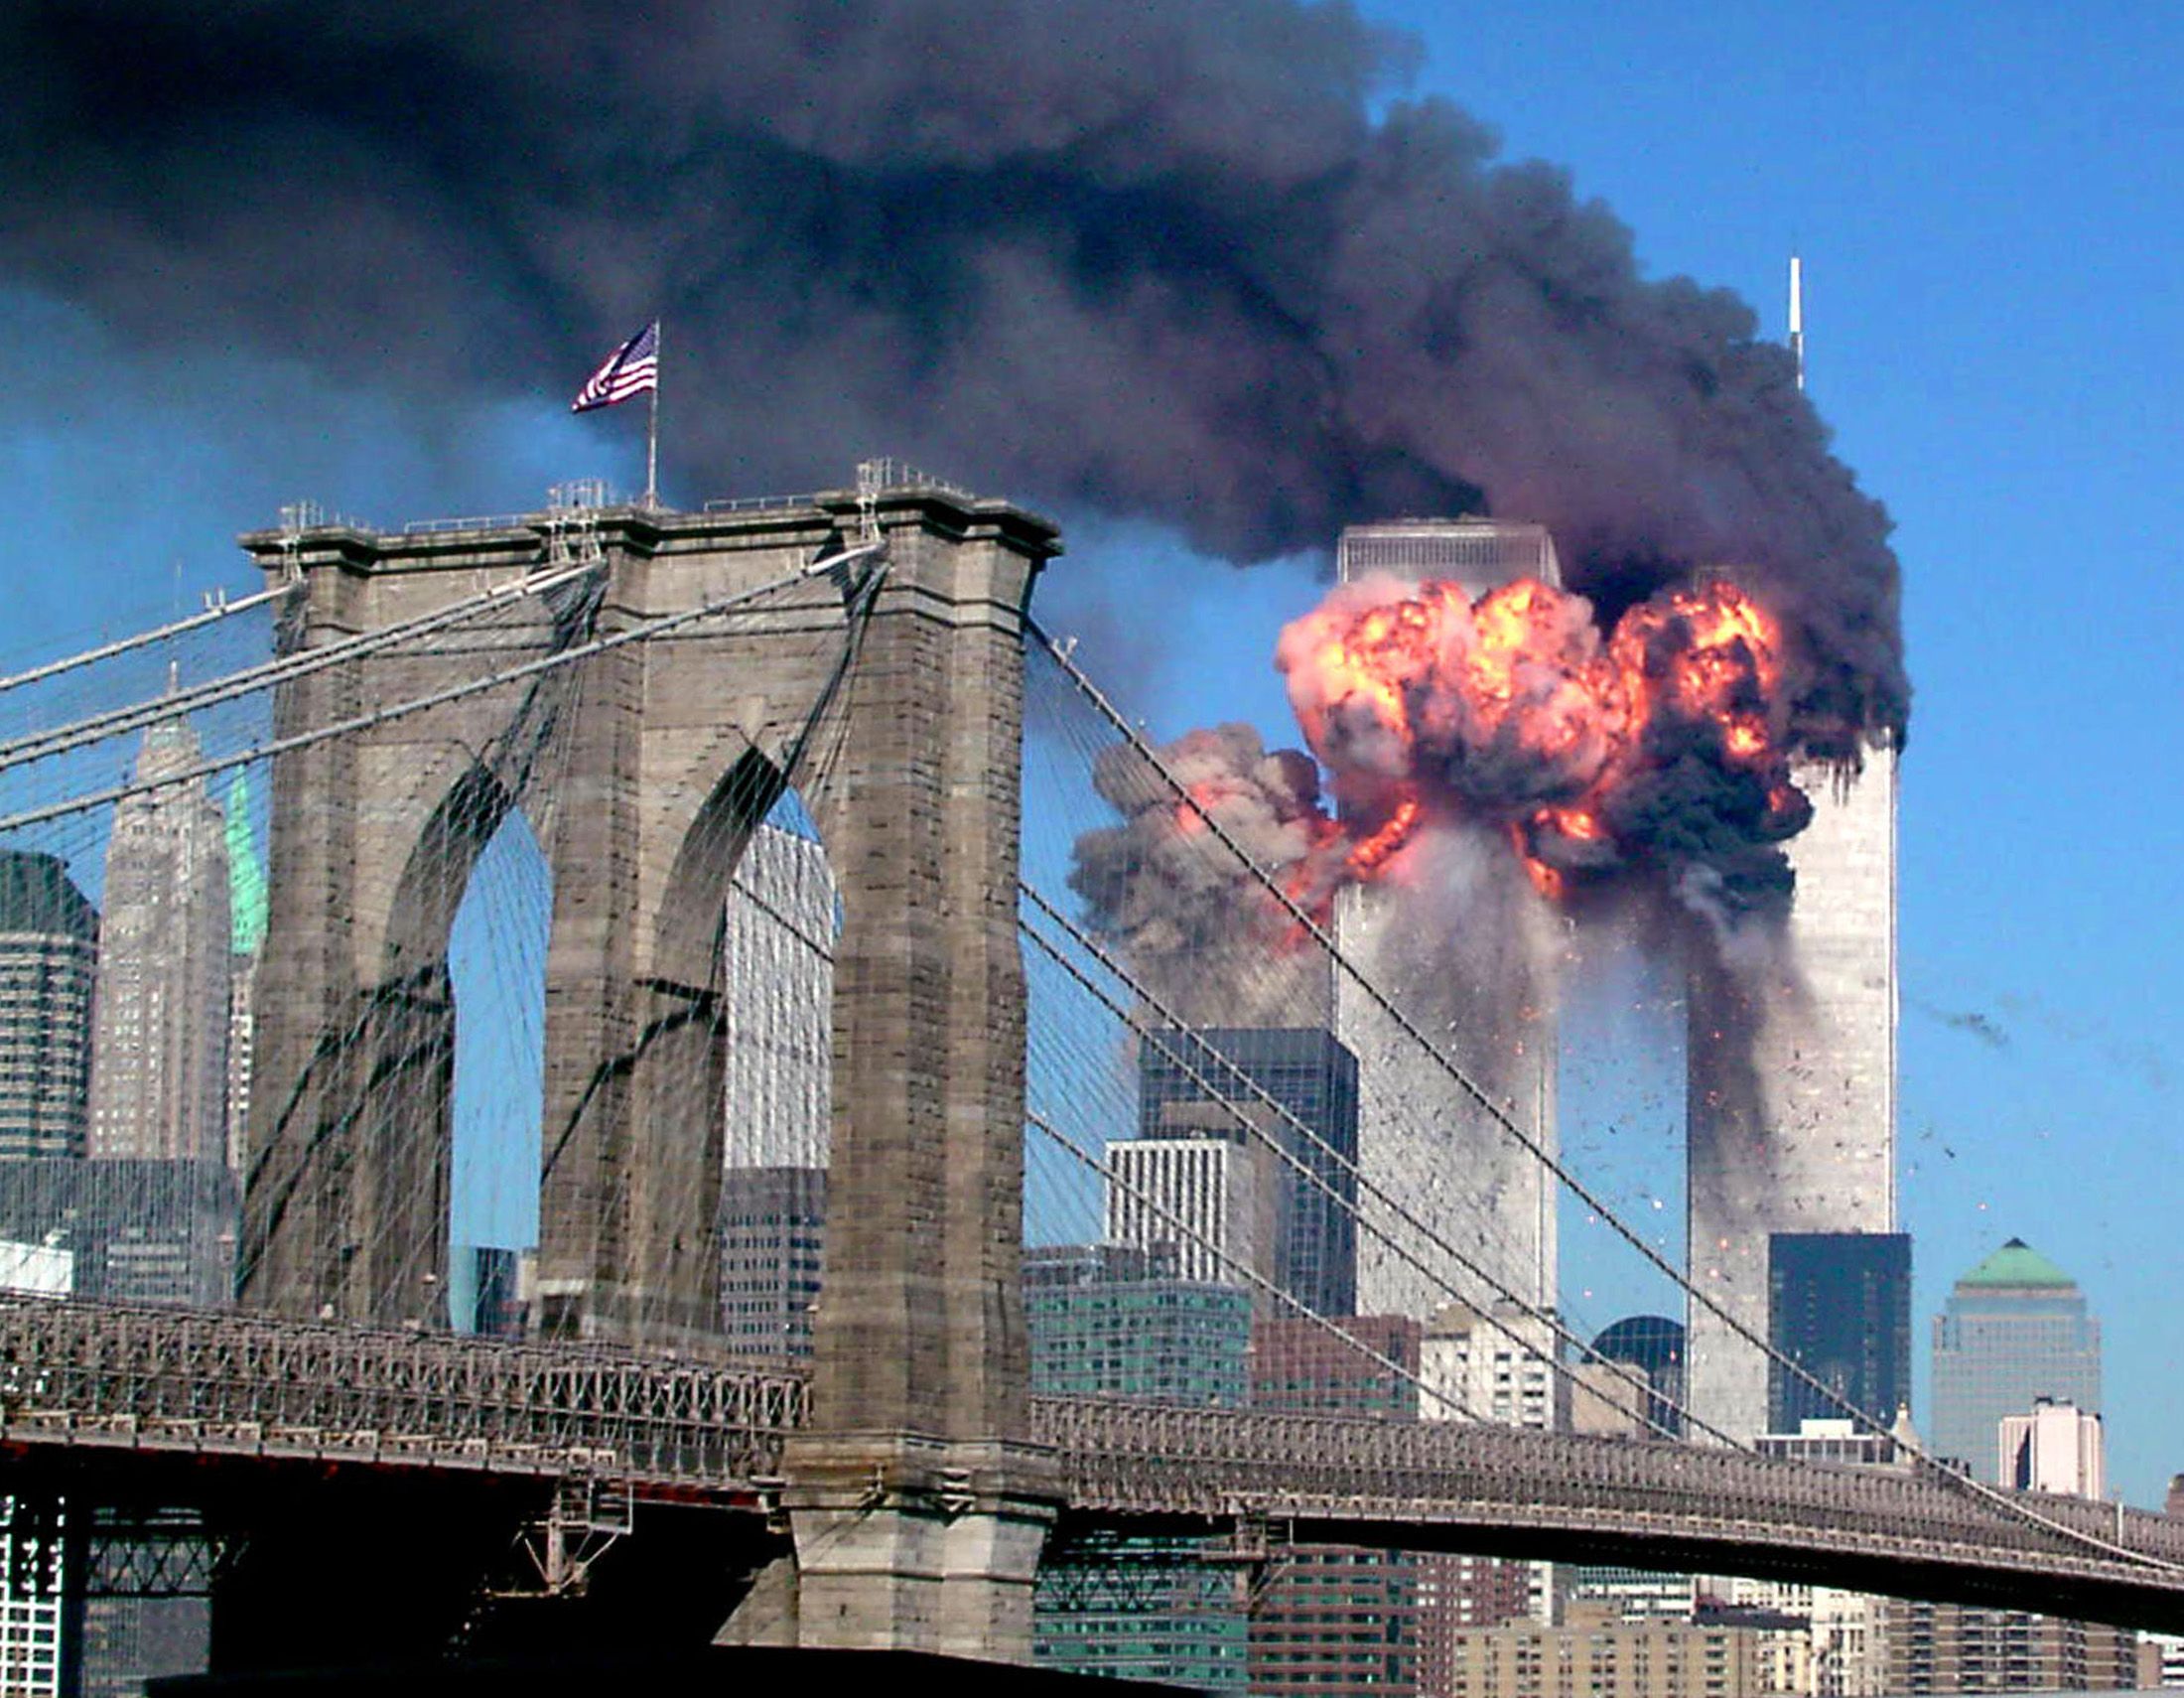 11 июня 2011. Теракт 11 сентября 2001 года башни Близнецы. США 11.09.2001 Нью-Йорк, башни-Близнецы.